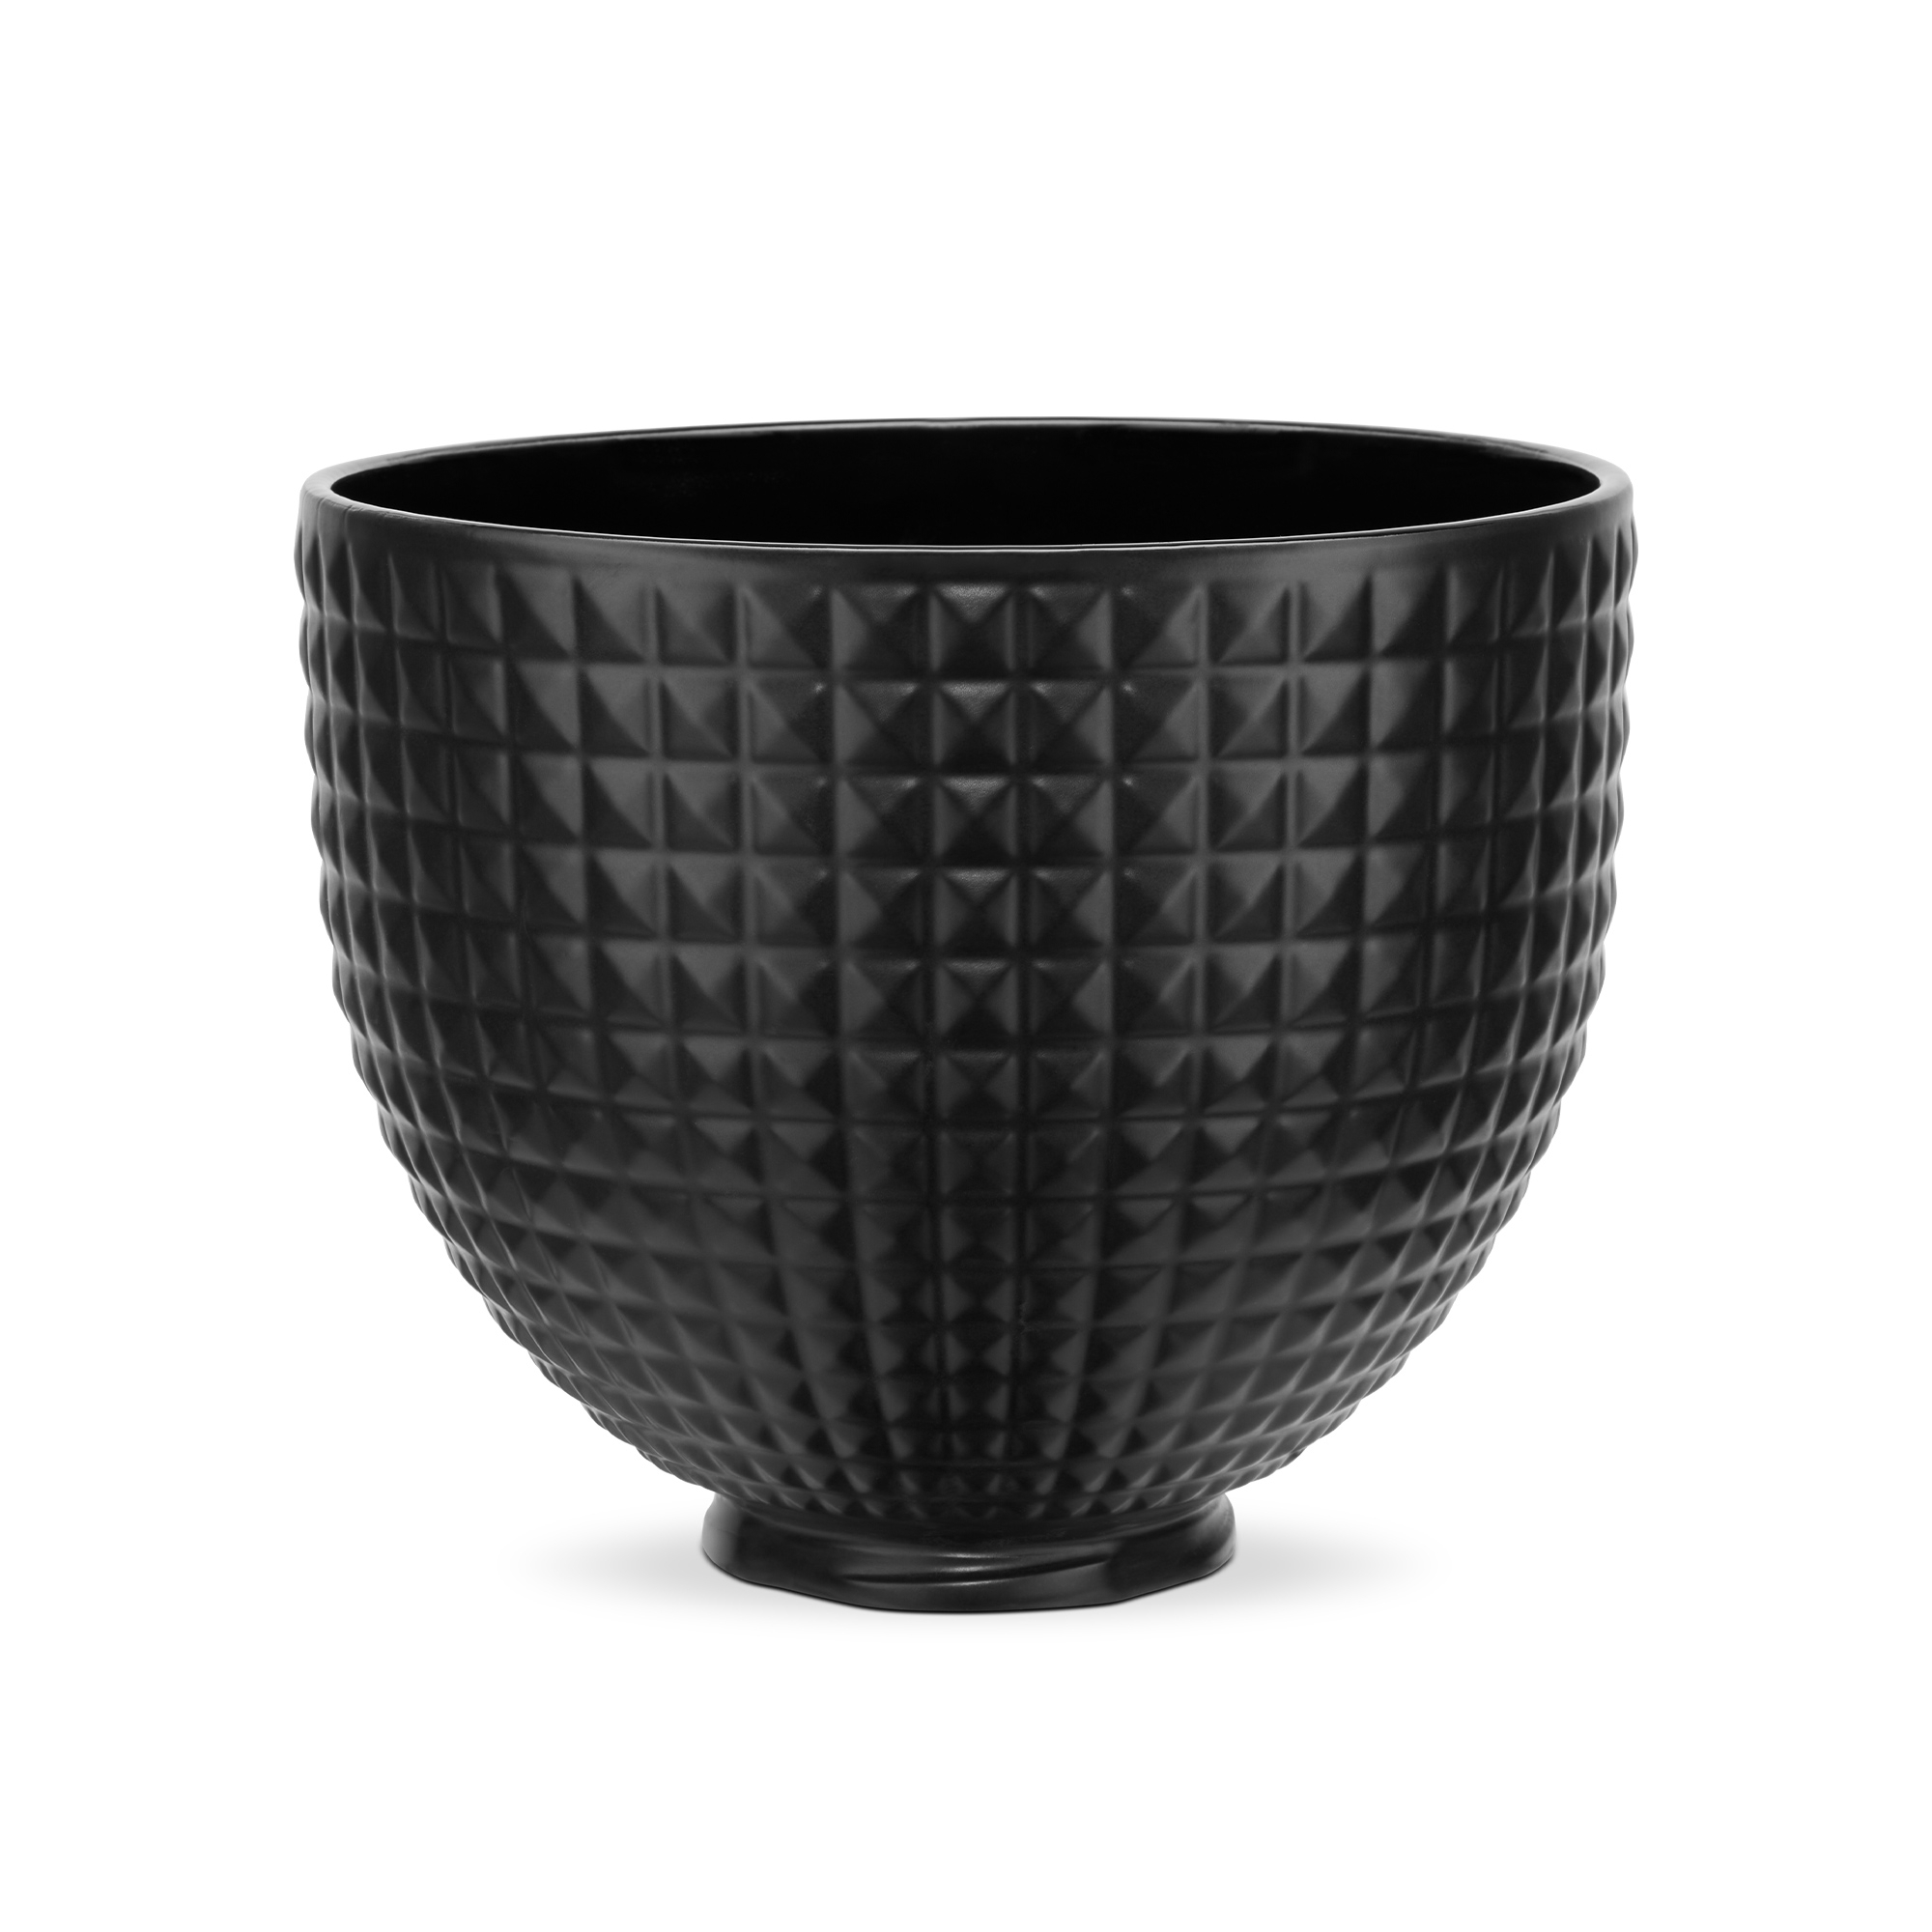 KitchenAid - Keramik-Schüssel 4,7 L - Black Studded